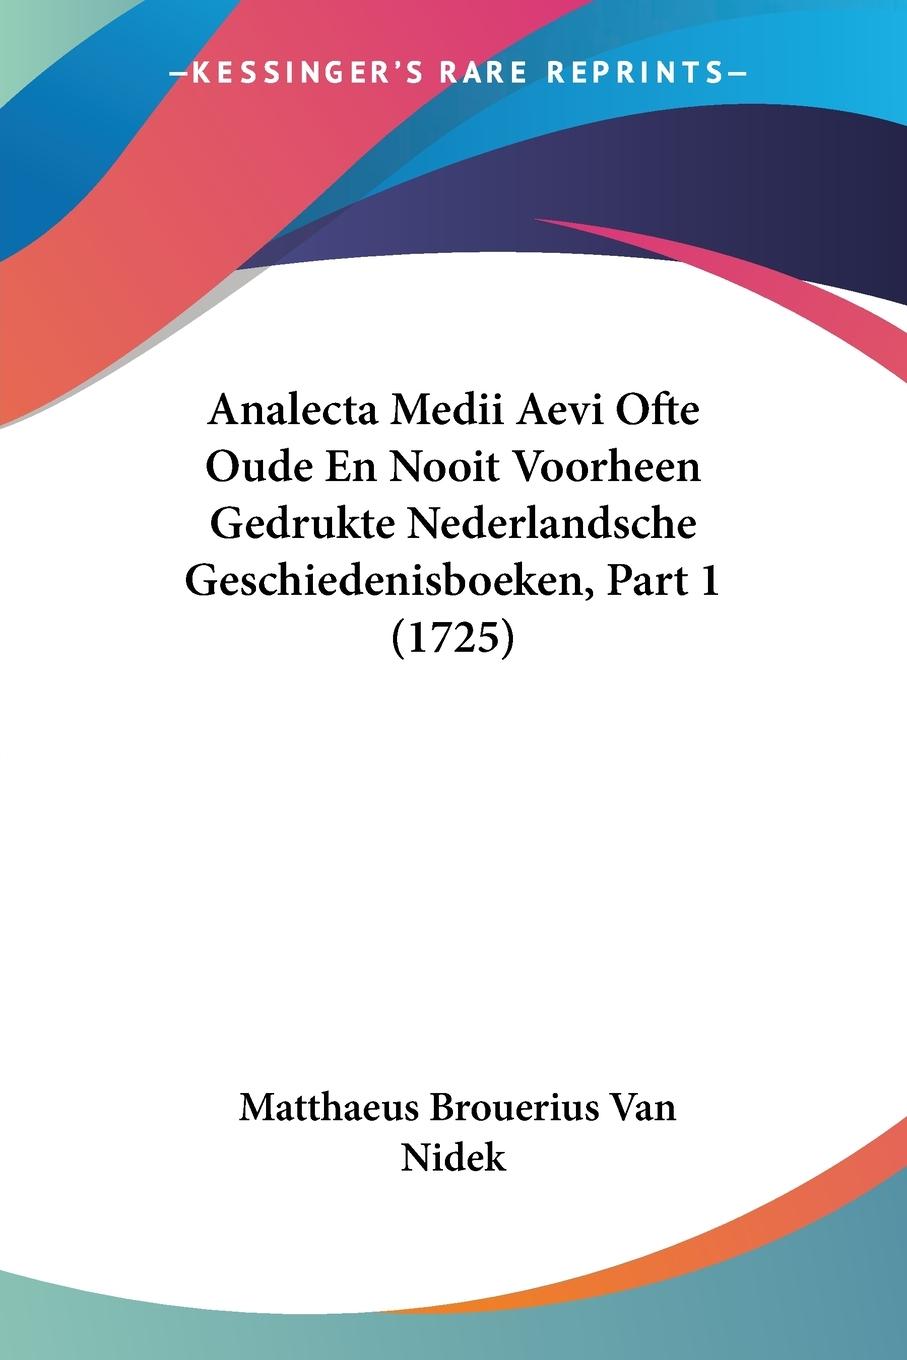 Analecta Medii Aevi Ofte Oude En Nooit Voorheen Gedrukte Nederlandsche Geschiedenisboeken, Part 1 (1725) - Nidek, Matthaeus Brouerius Van